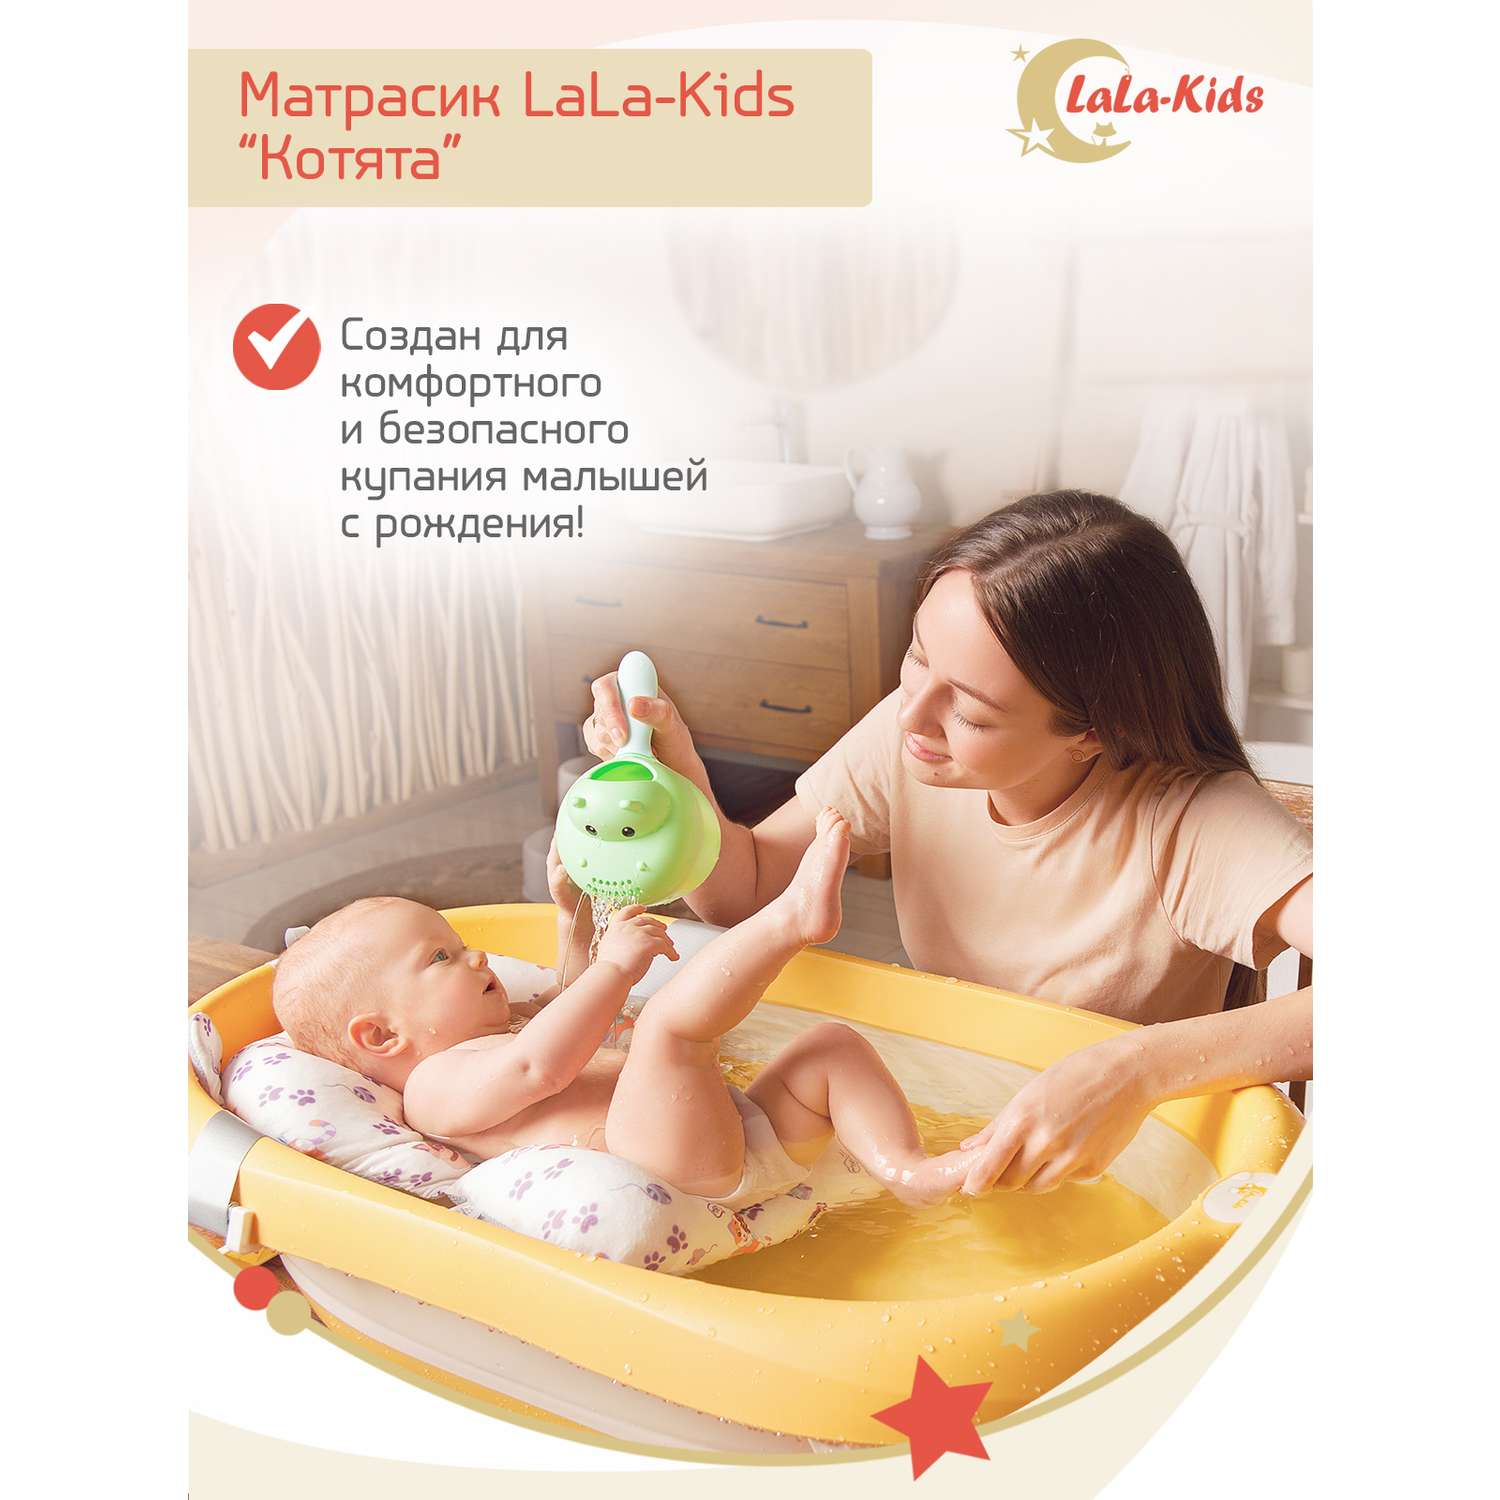 Матрасик Котята LaLa-Kids для купания новорожденных - фото 2